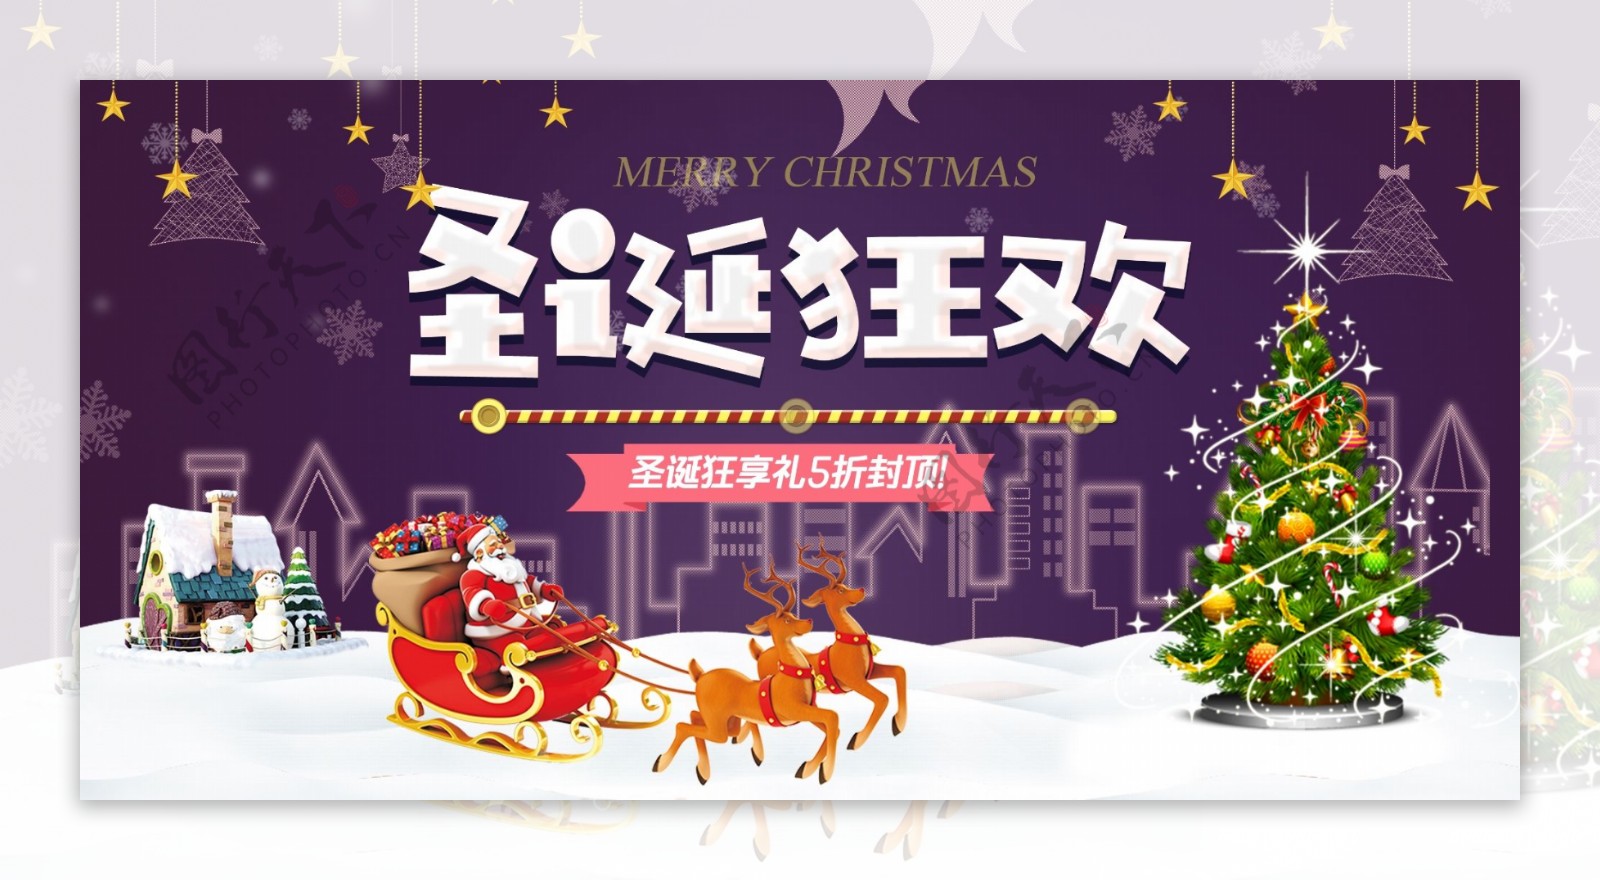 淘宝天猫圣诞节节日促销海报